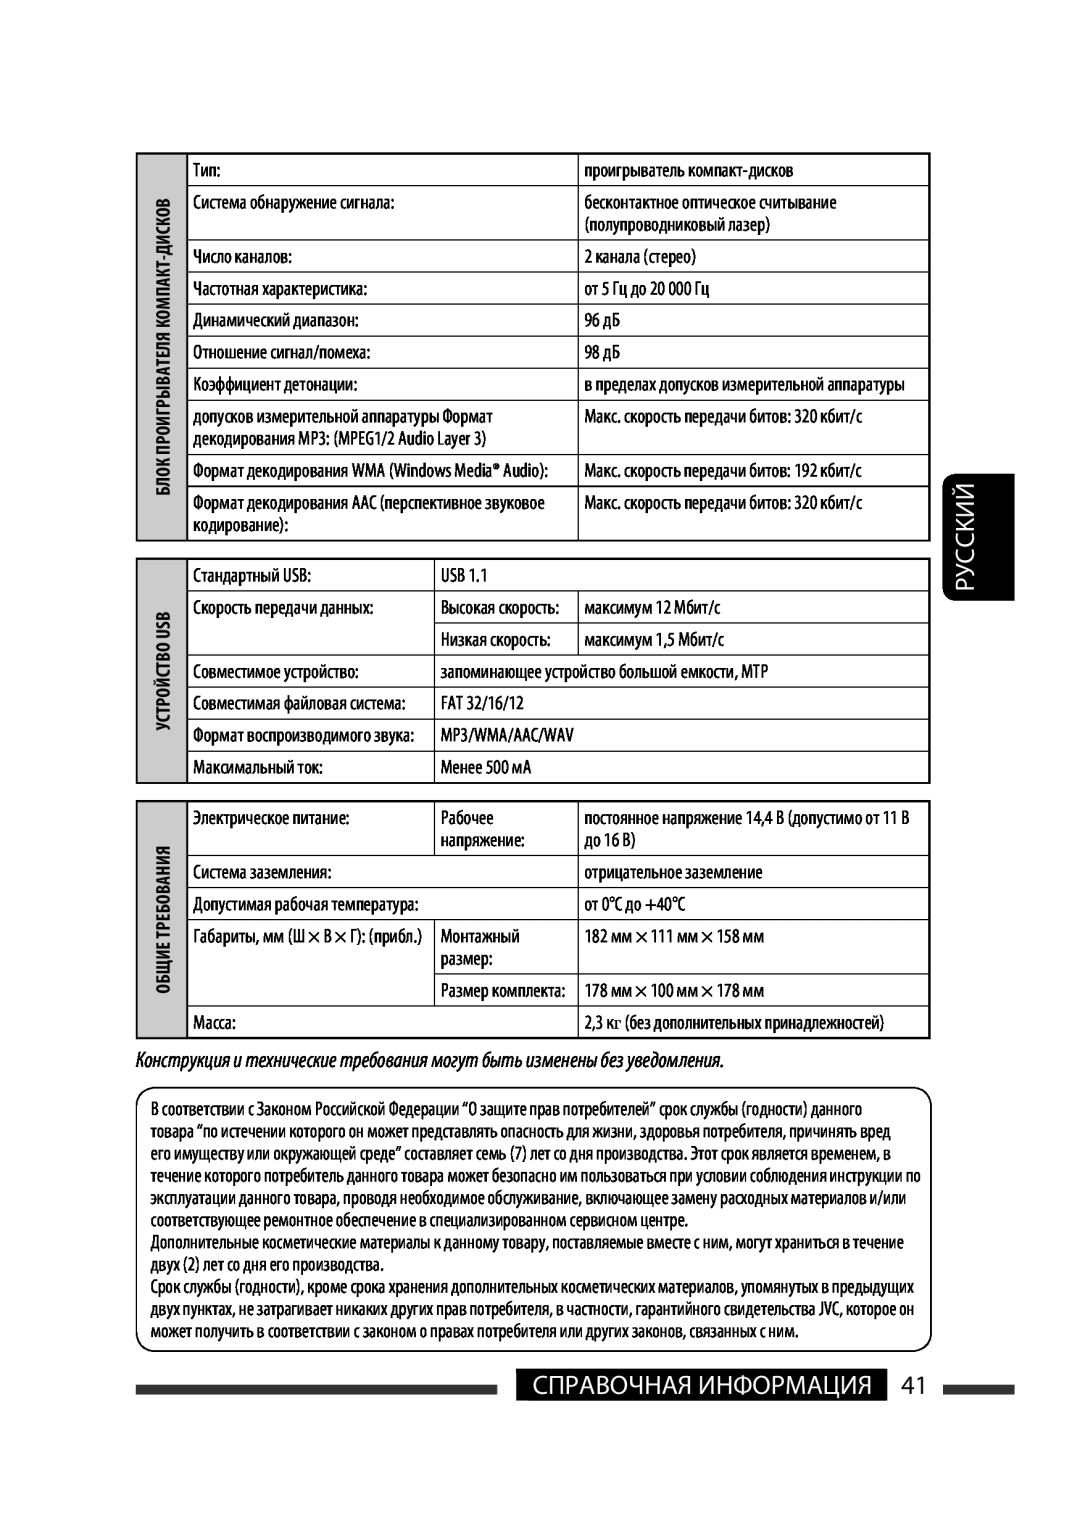 JVC KW-XG701 manual Руcckий, Справочная Информация 